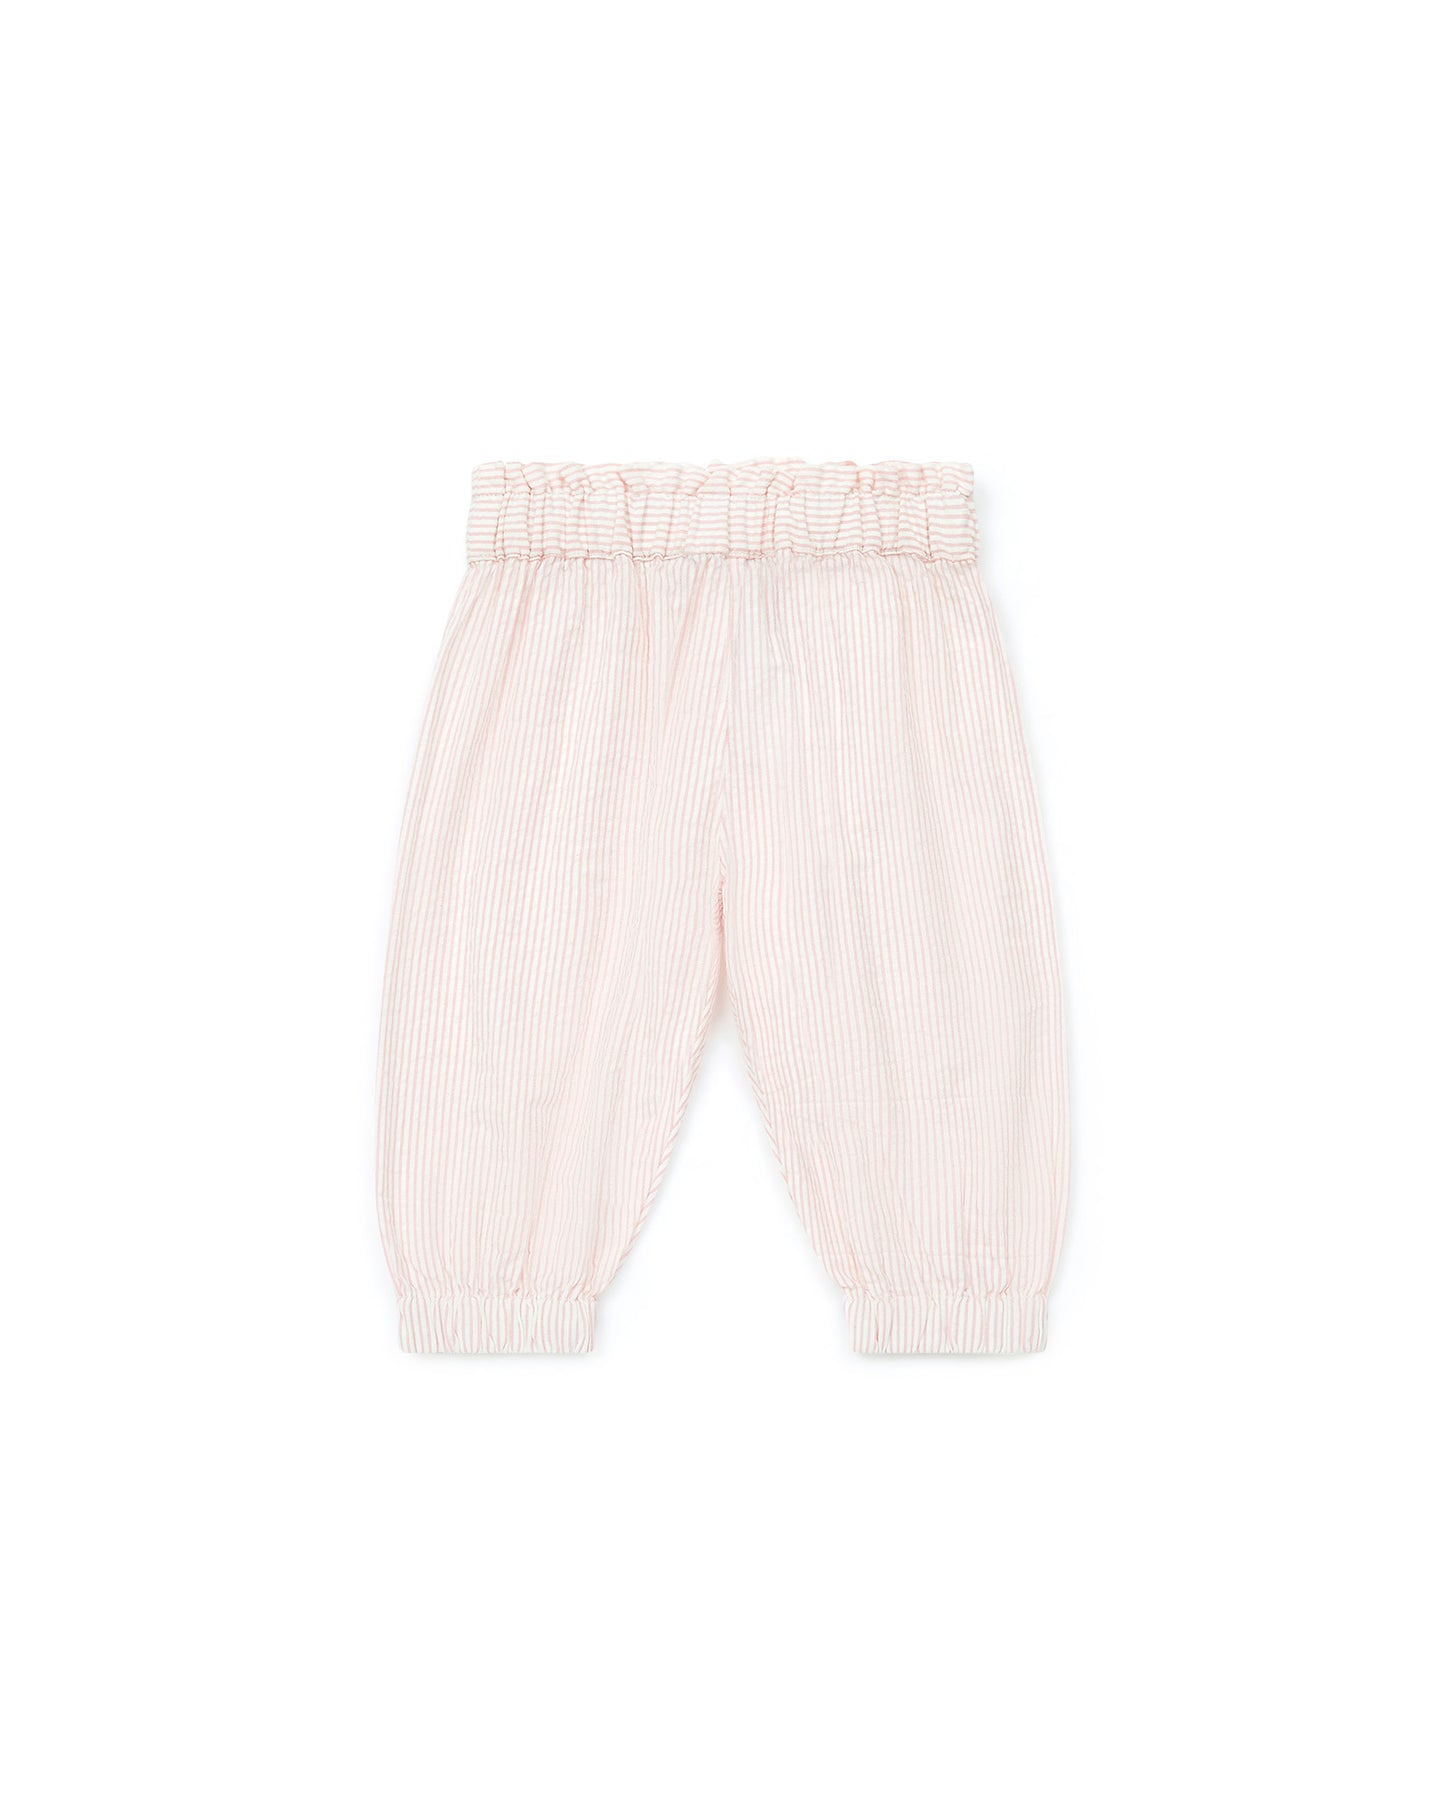 Pantalon - bébé uni 100% coton